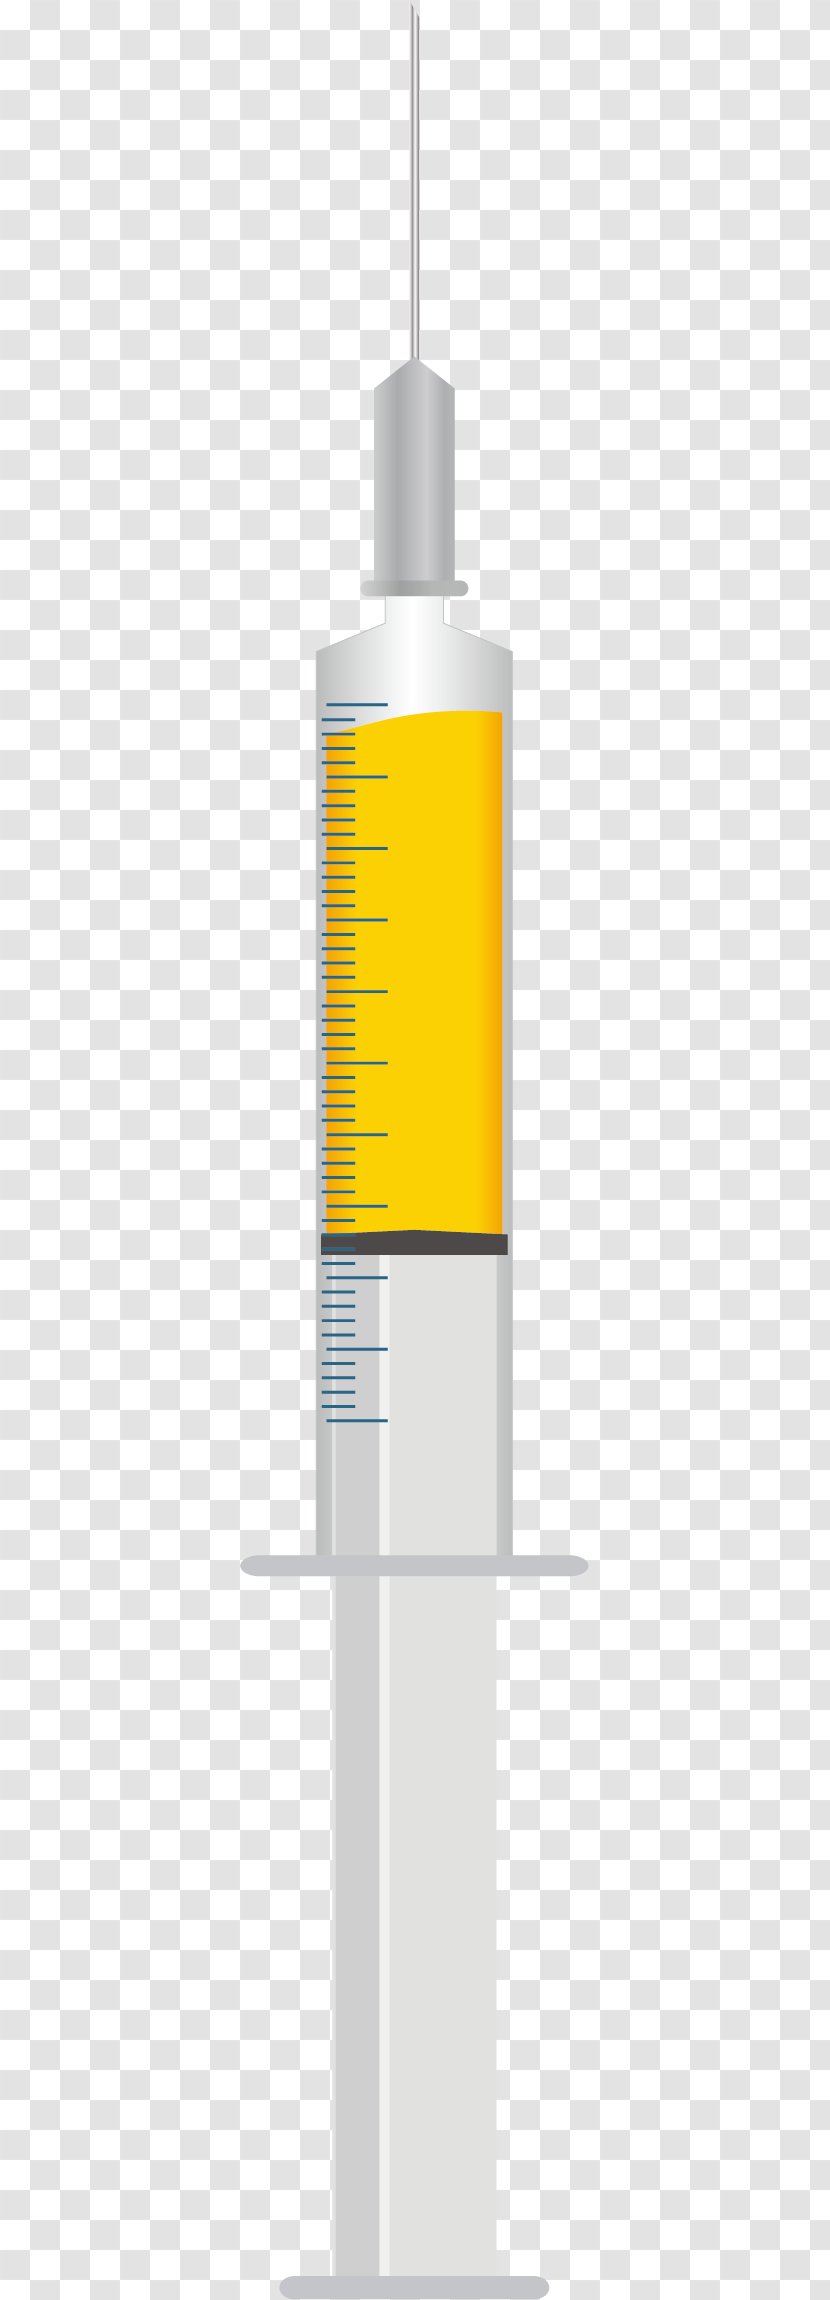 Yellow Font - Cylinder - Syringe Medical Care Transparent PNG